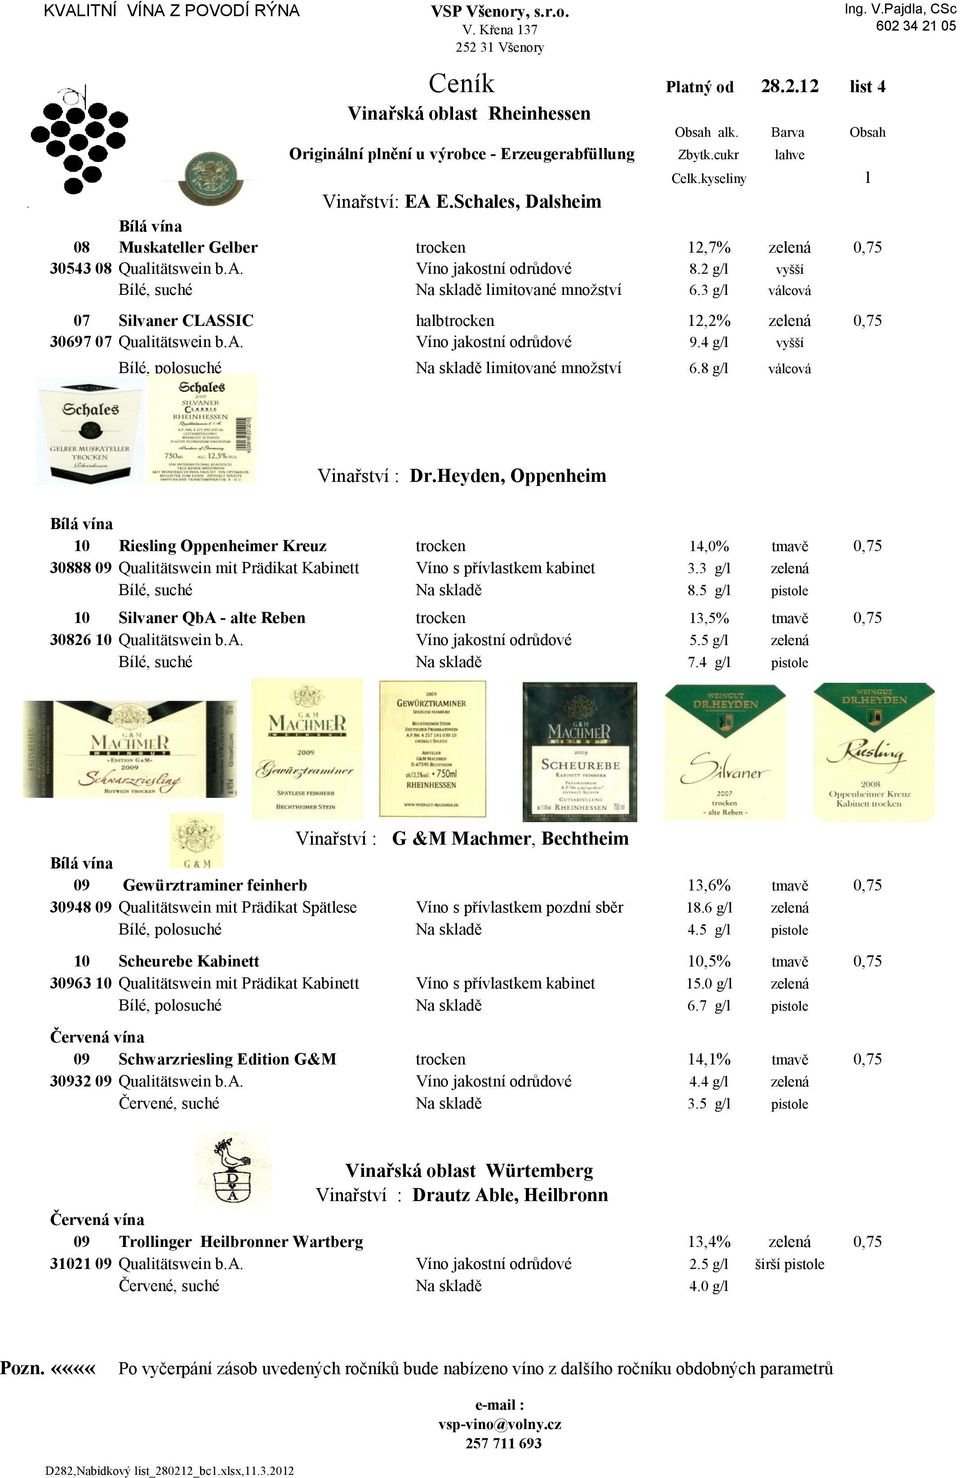 3 g/l válcová 07 Silvaner CLASSIC halbtrocken 12,2% zelená 0,75 30697 07 Qualitätswein b.a. Víno jakostní odrůdové 9.4 g/l vyšší Bílé, polosuché limitované množství 6.8 g/l válcová l Vinařství : Dr.